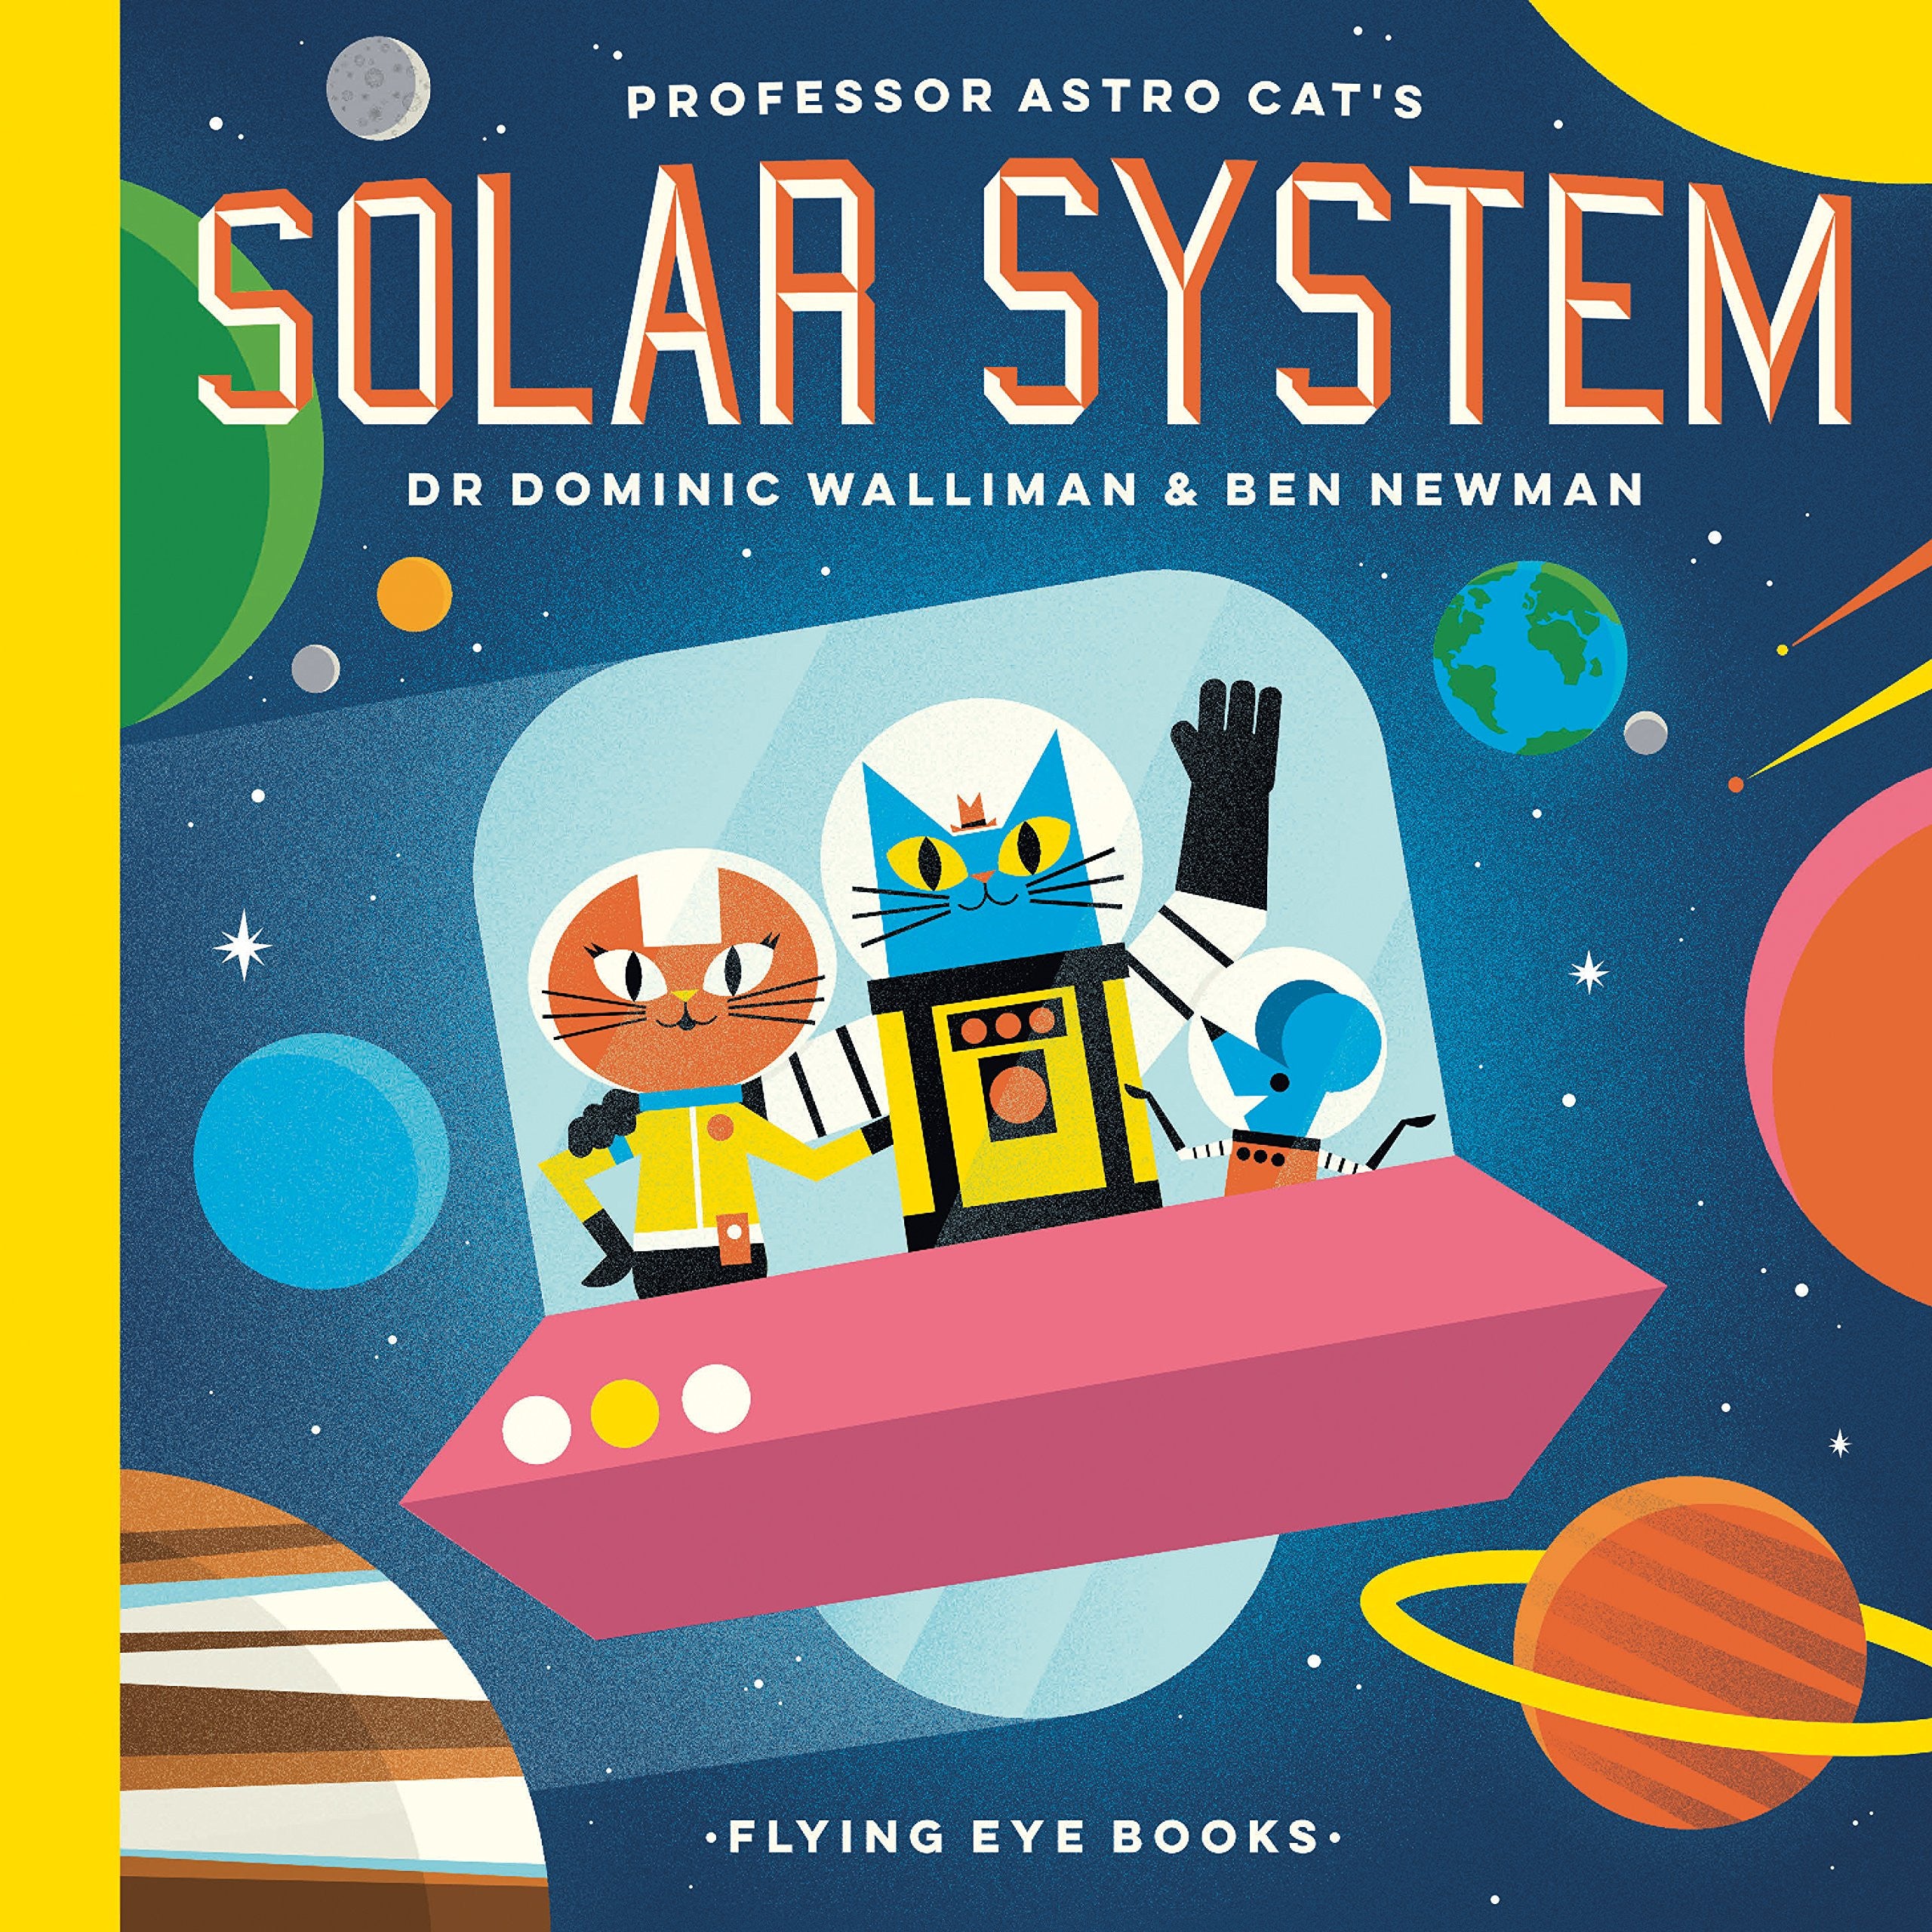 El Profesor Astro Cat y El Sistema Solar